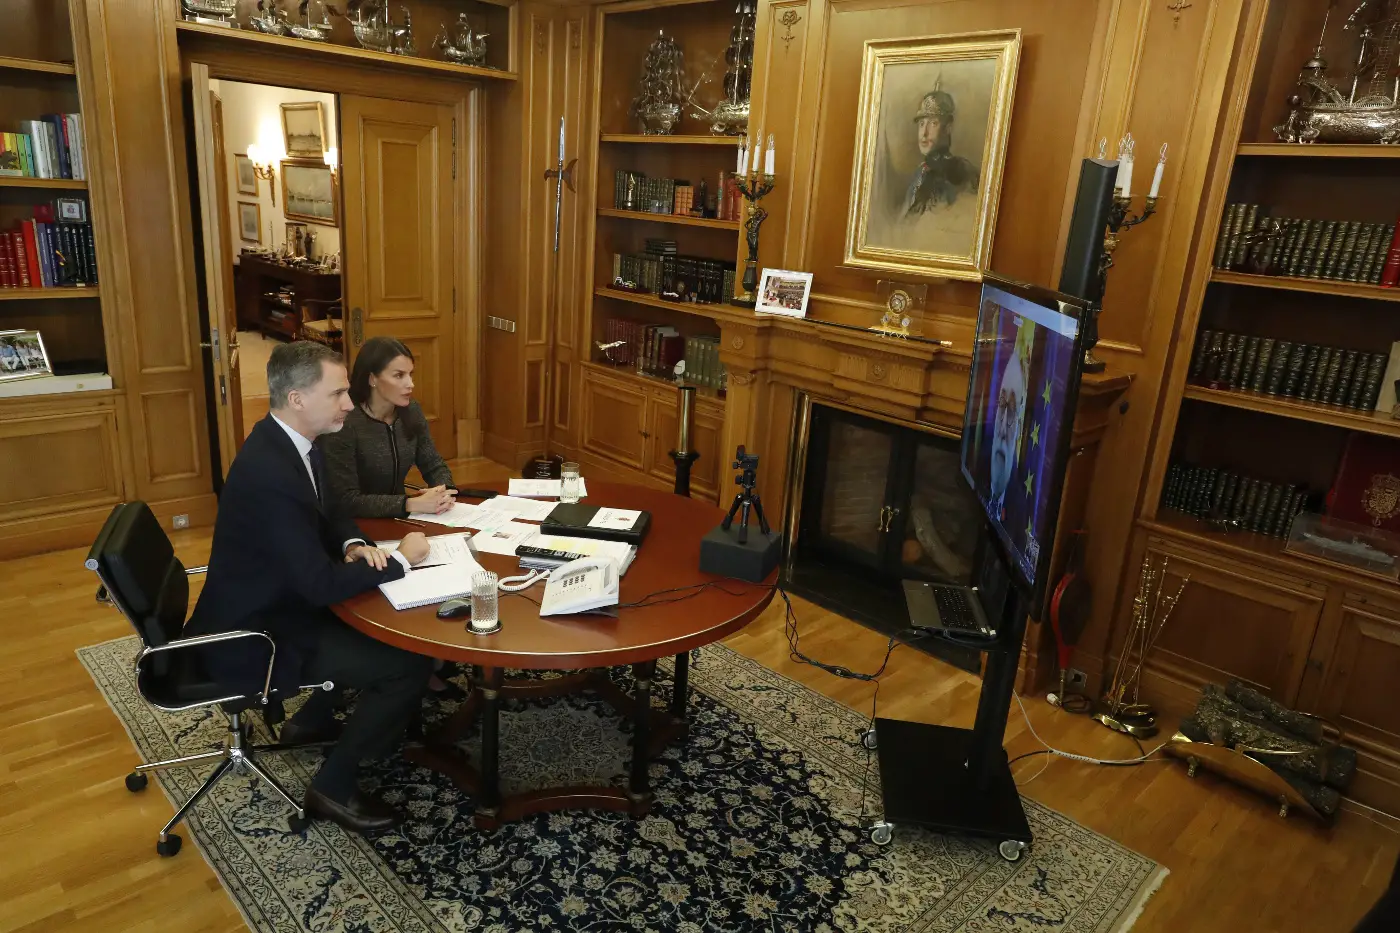 Felipe and Letizia at Felipe's office in Madrid